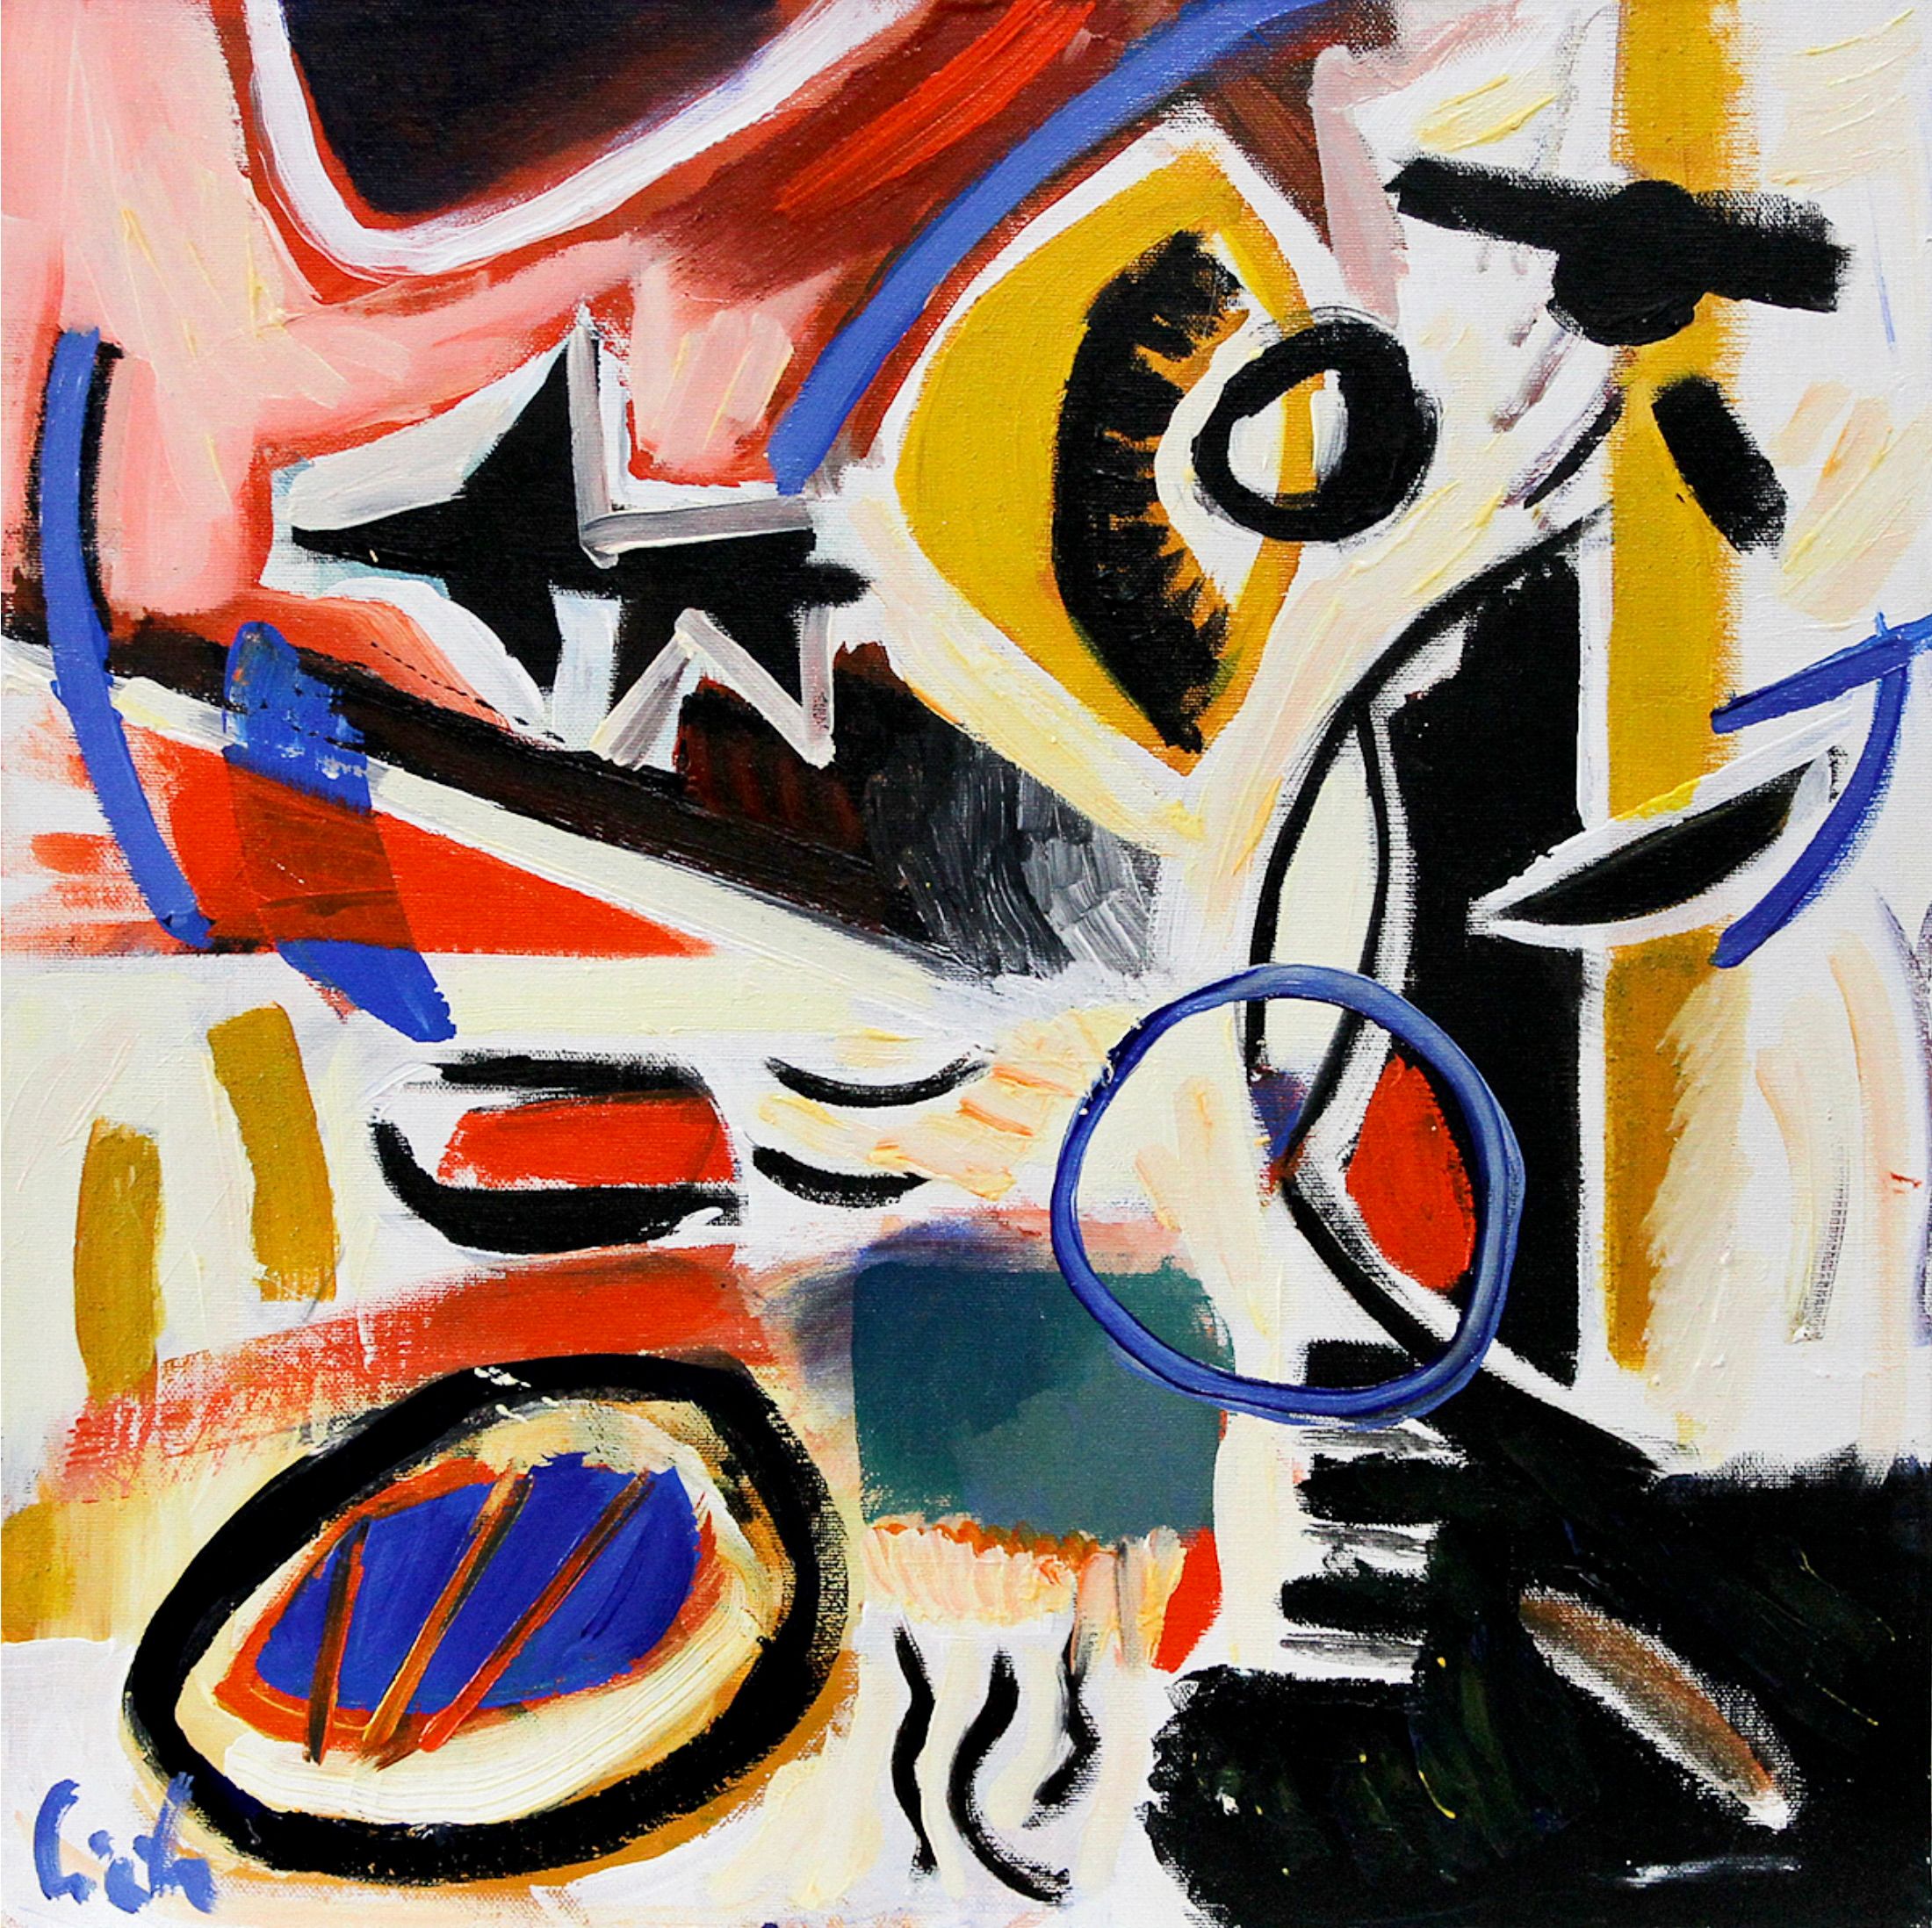 MECESLA Maciej Cieśla, "Composición abstracta 42", Pintura abstracta de colores sobre lienzo